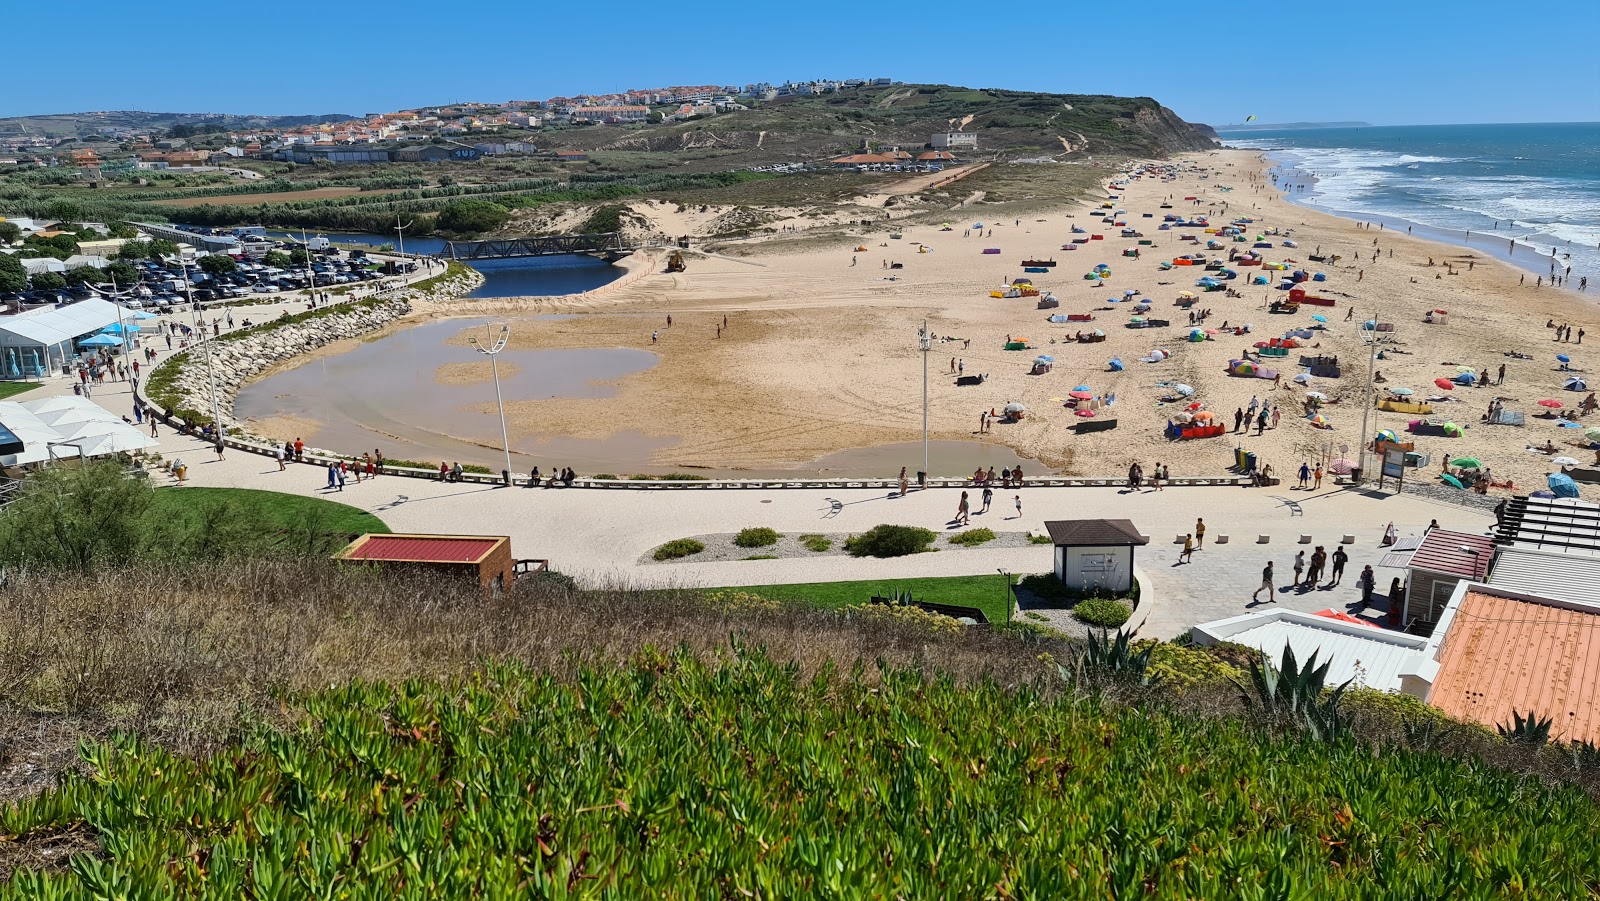 Photo of Praia da Areia Branca with turquoise water surface